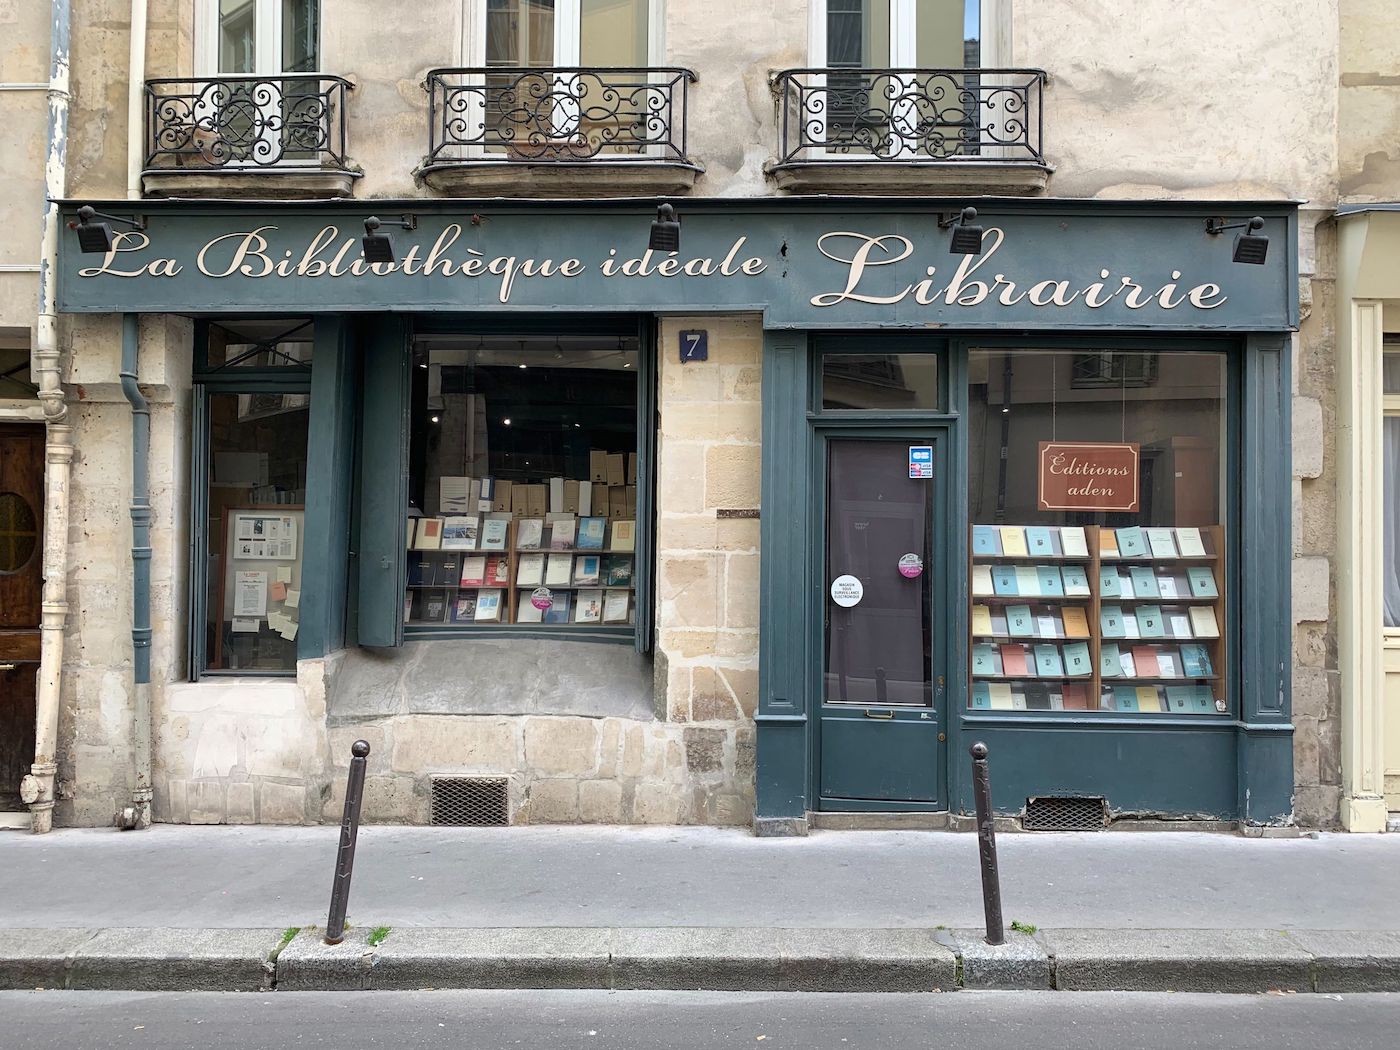 La Bibliotheque idéale Bookshop Librairie in Paris 5th